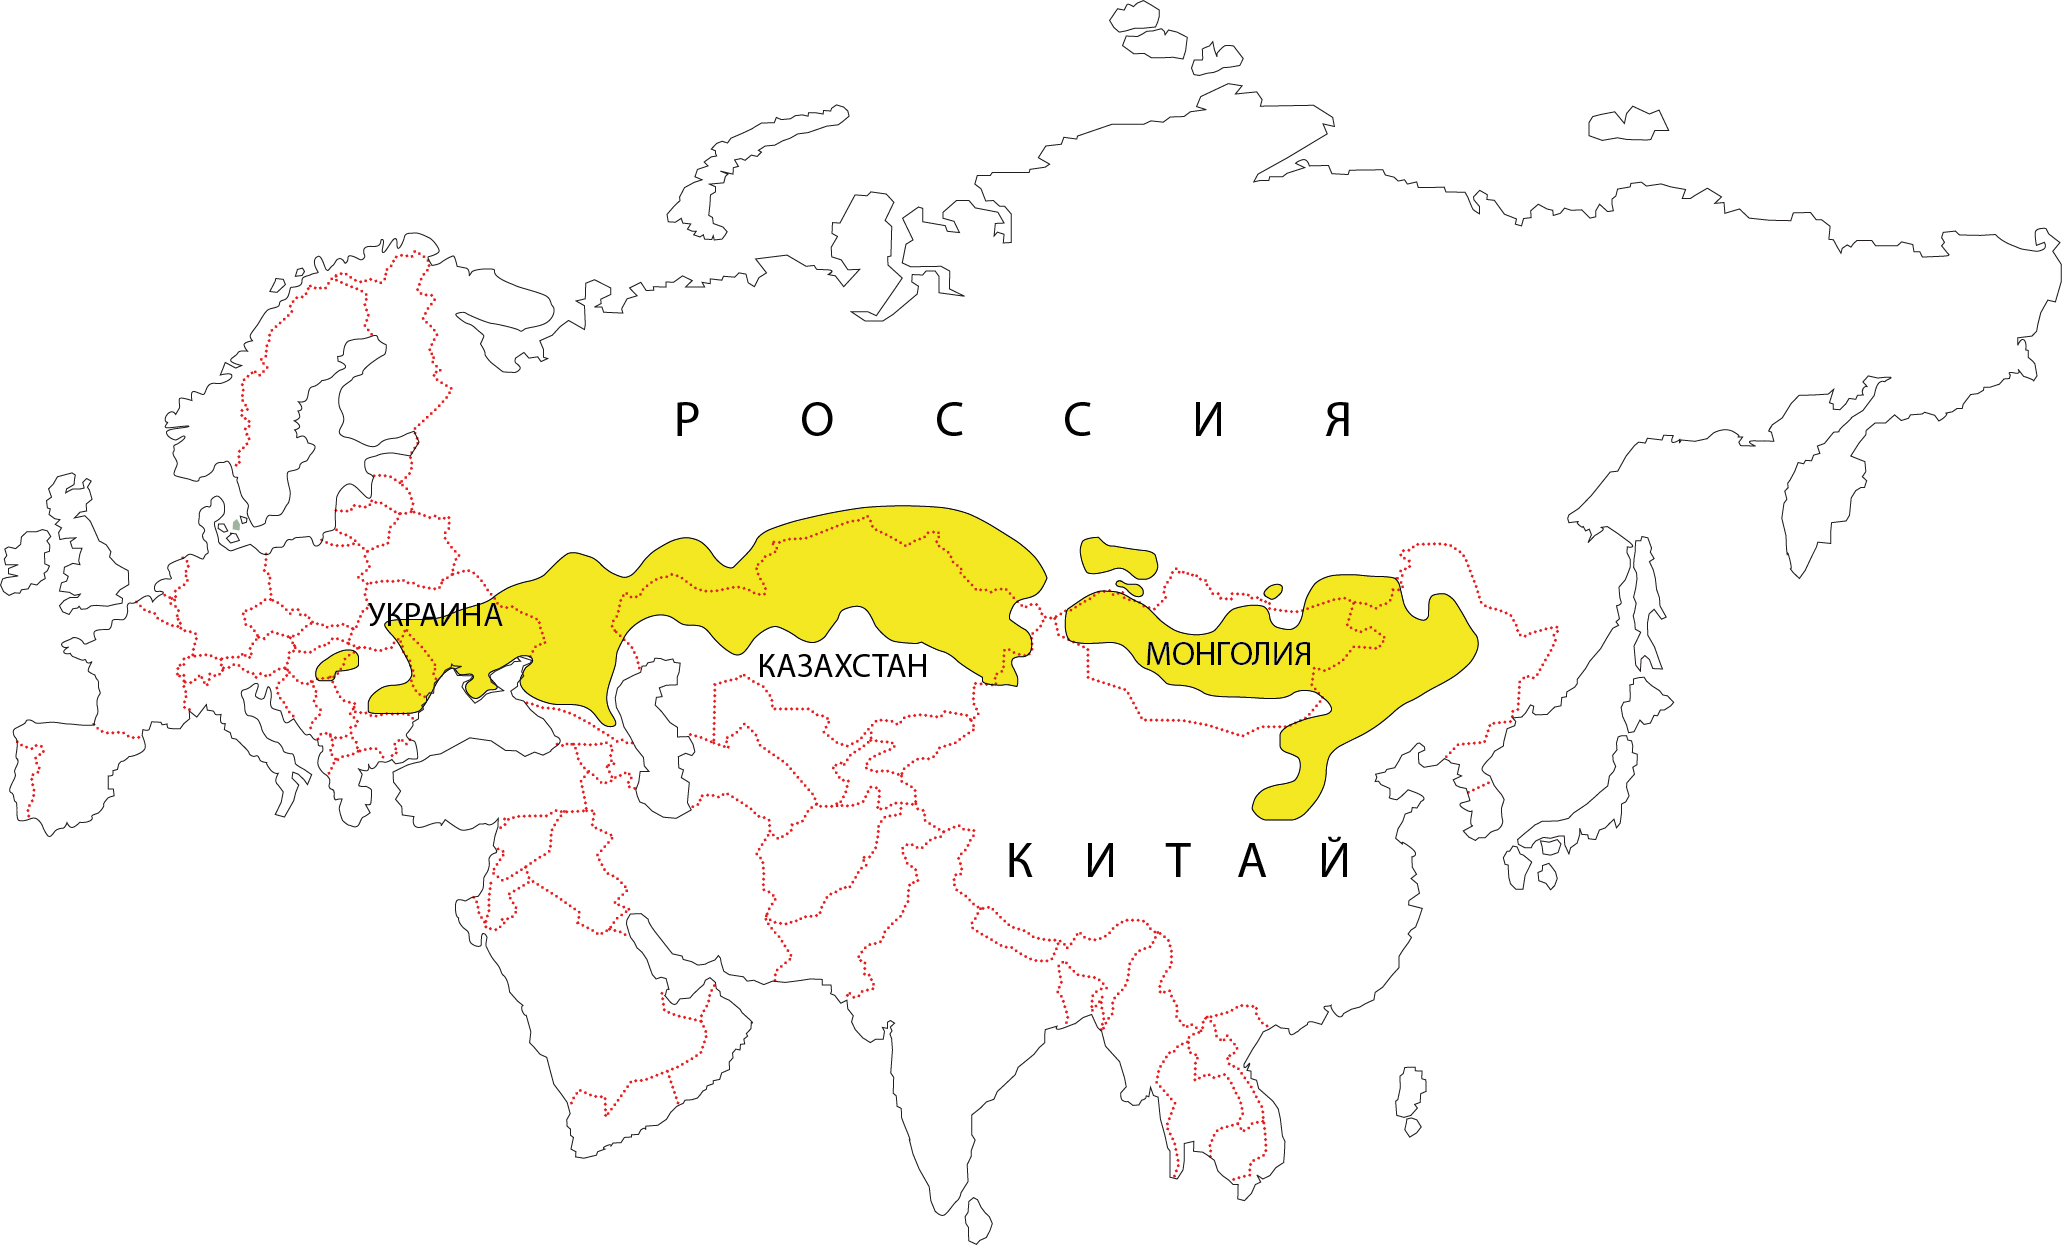 Зона степей на карте Евразии